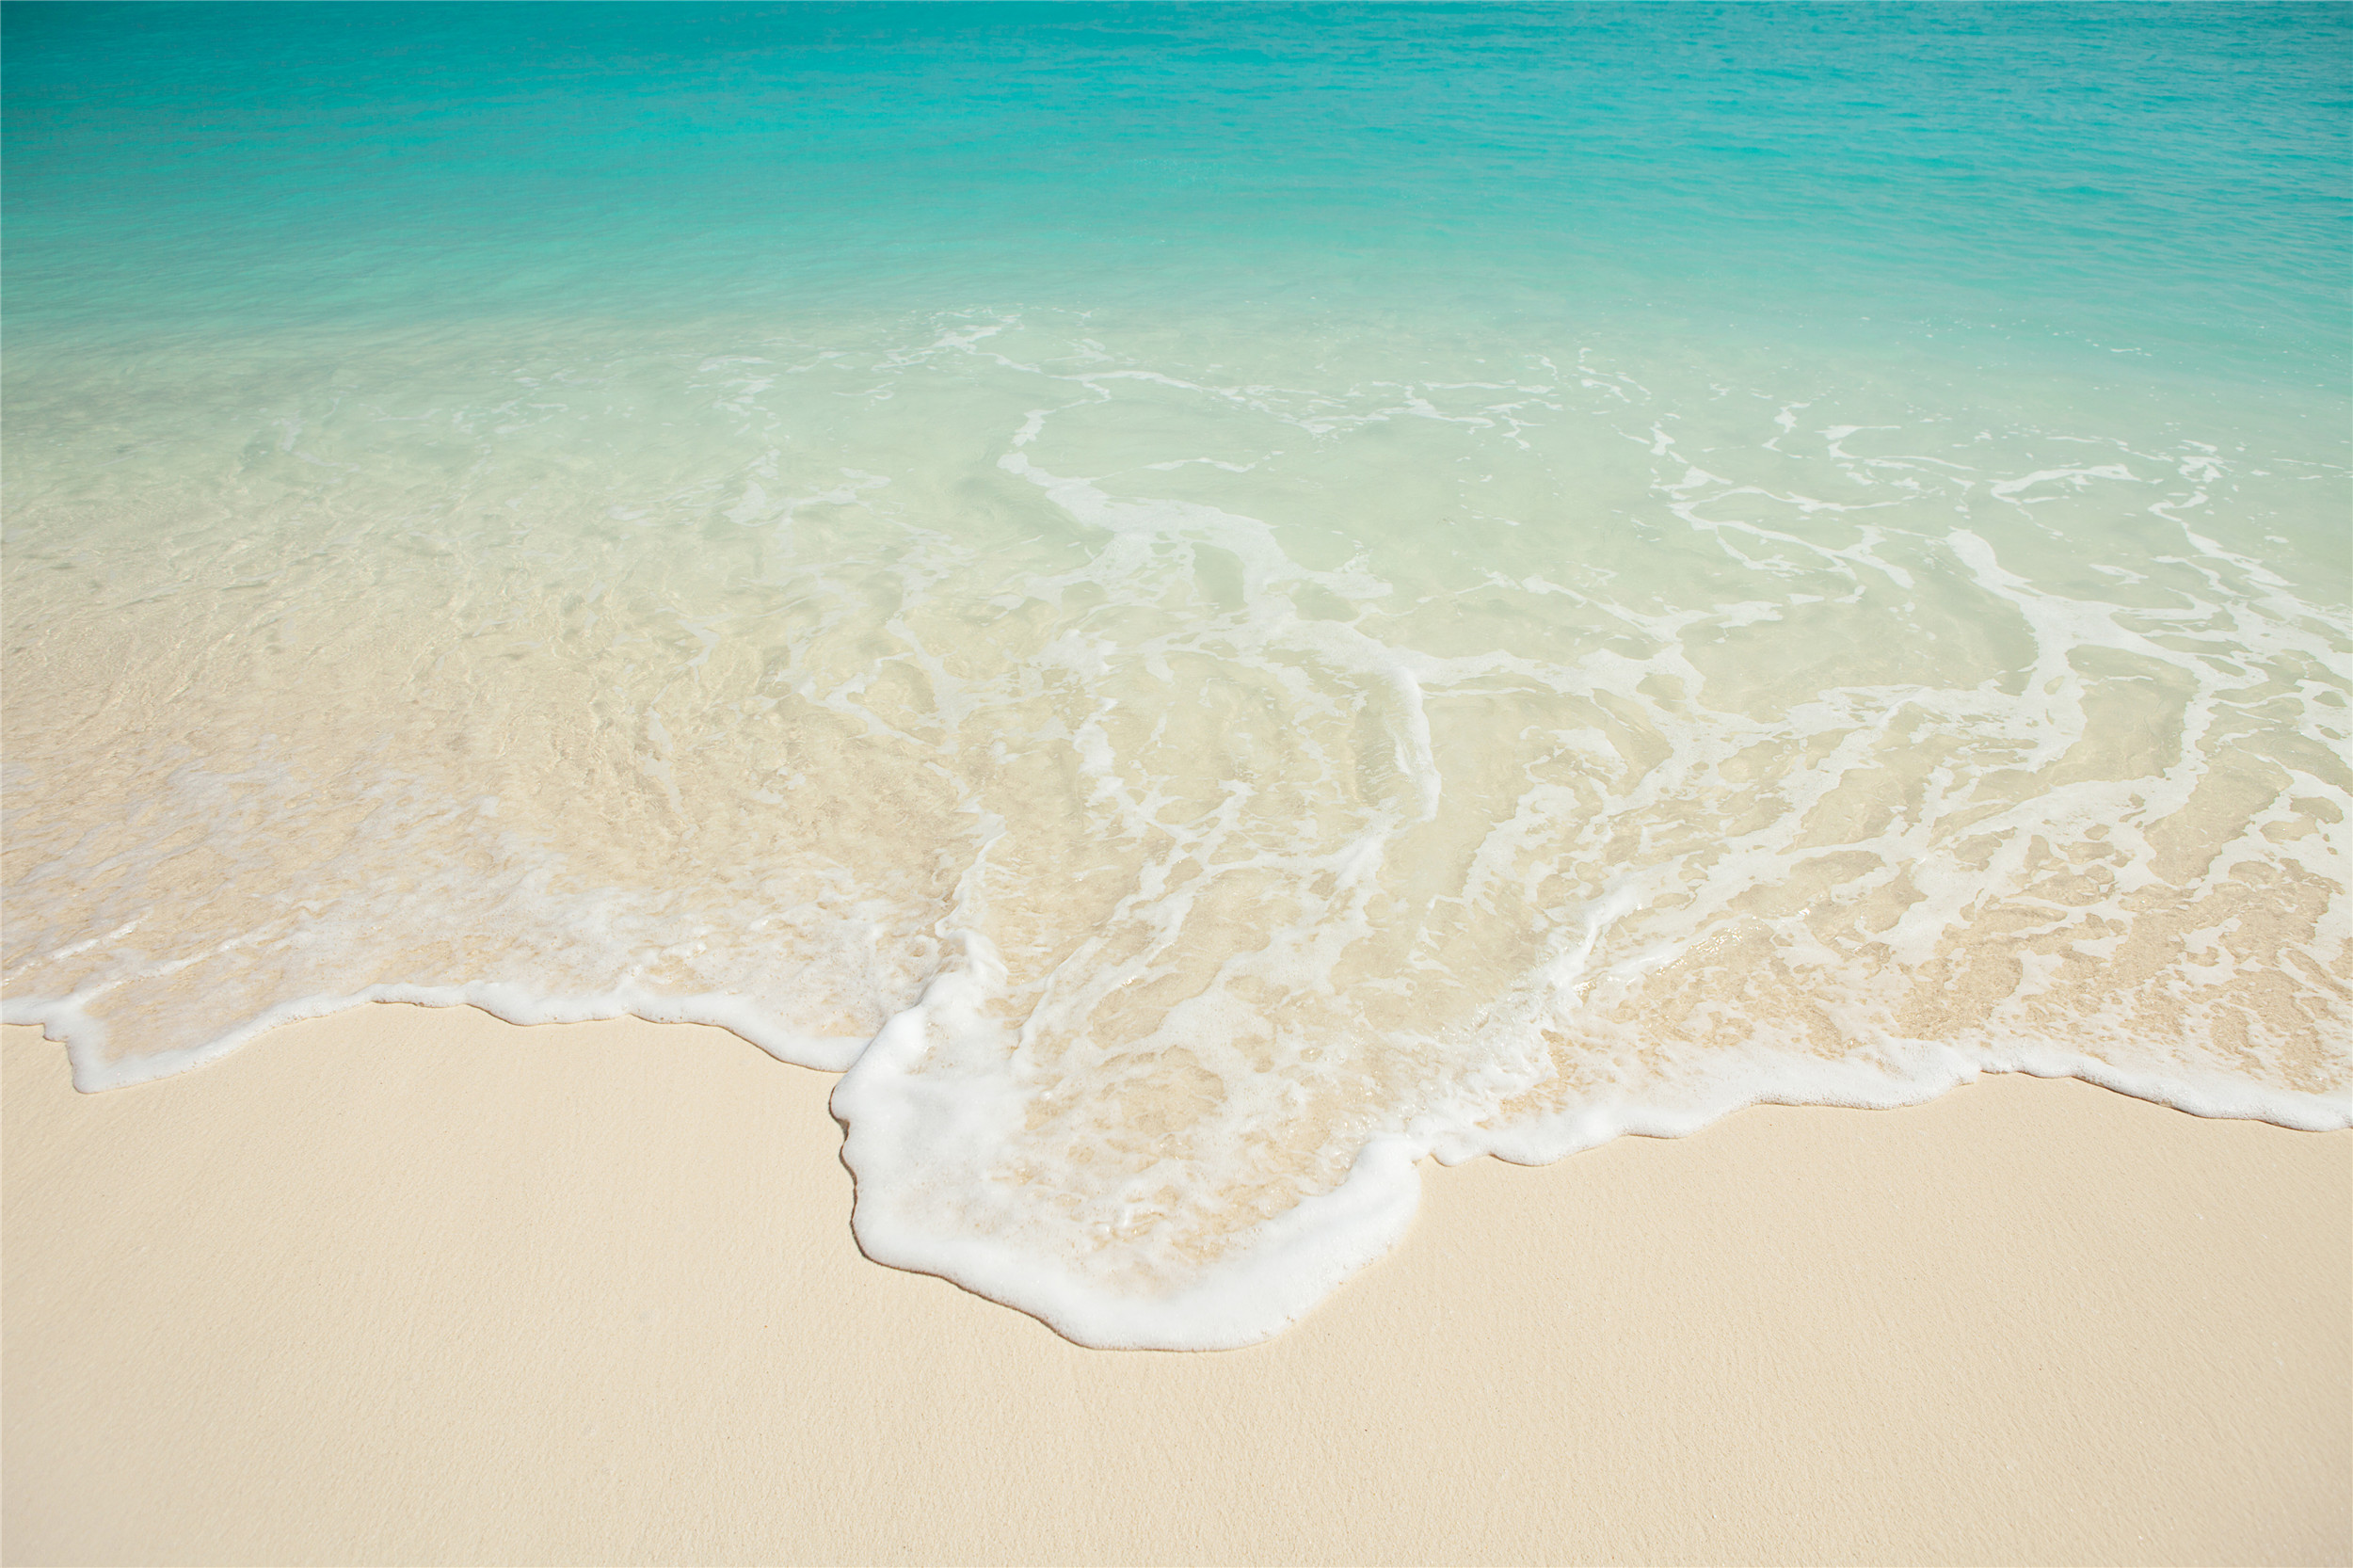 海水涌上沙滩:米白色的沙滩,涌上来的是白色的水花,蓝绿色的海水是